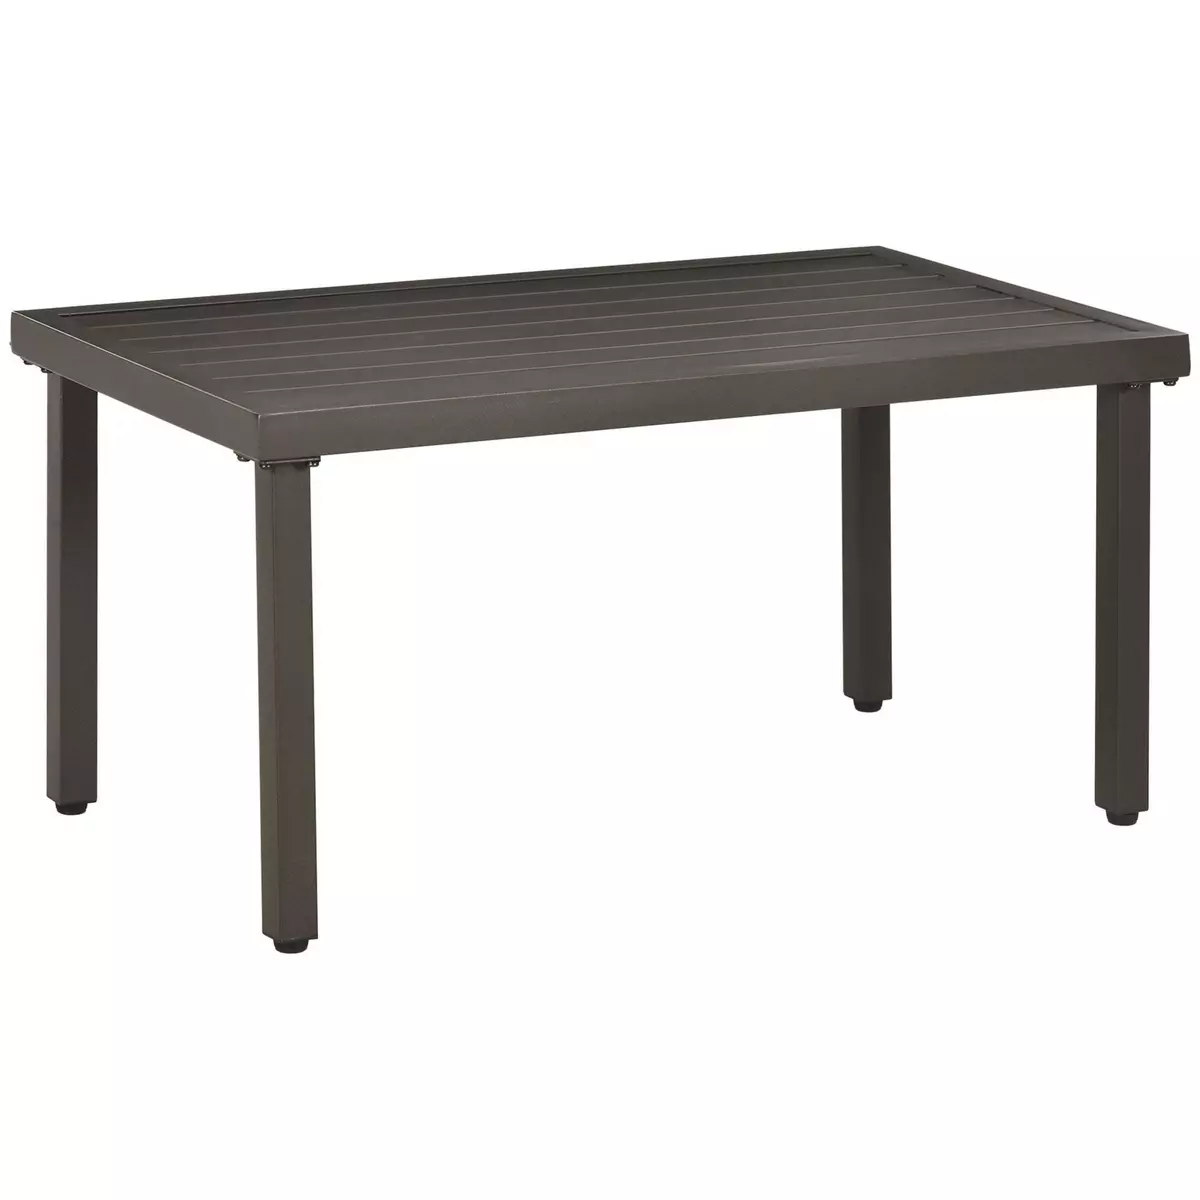 OUTSUNNY Table basse rectangulaire de jardin plateau à lattes pieds réglables dim. 91L x 51l x 46H cm acier marron